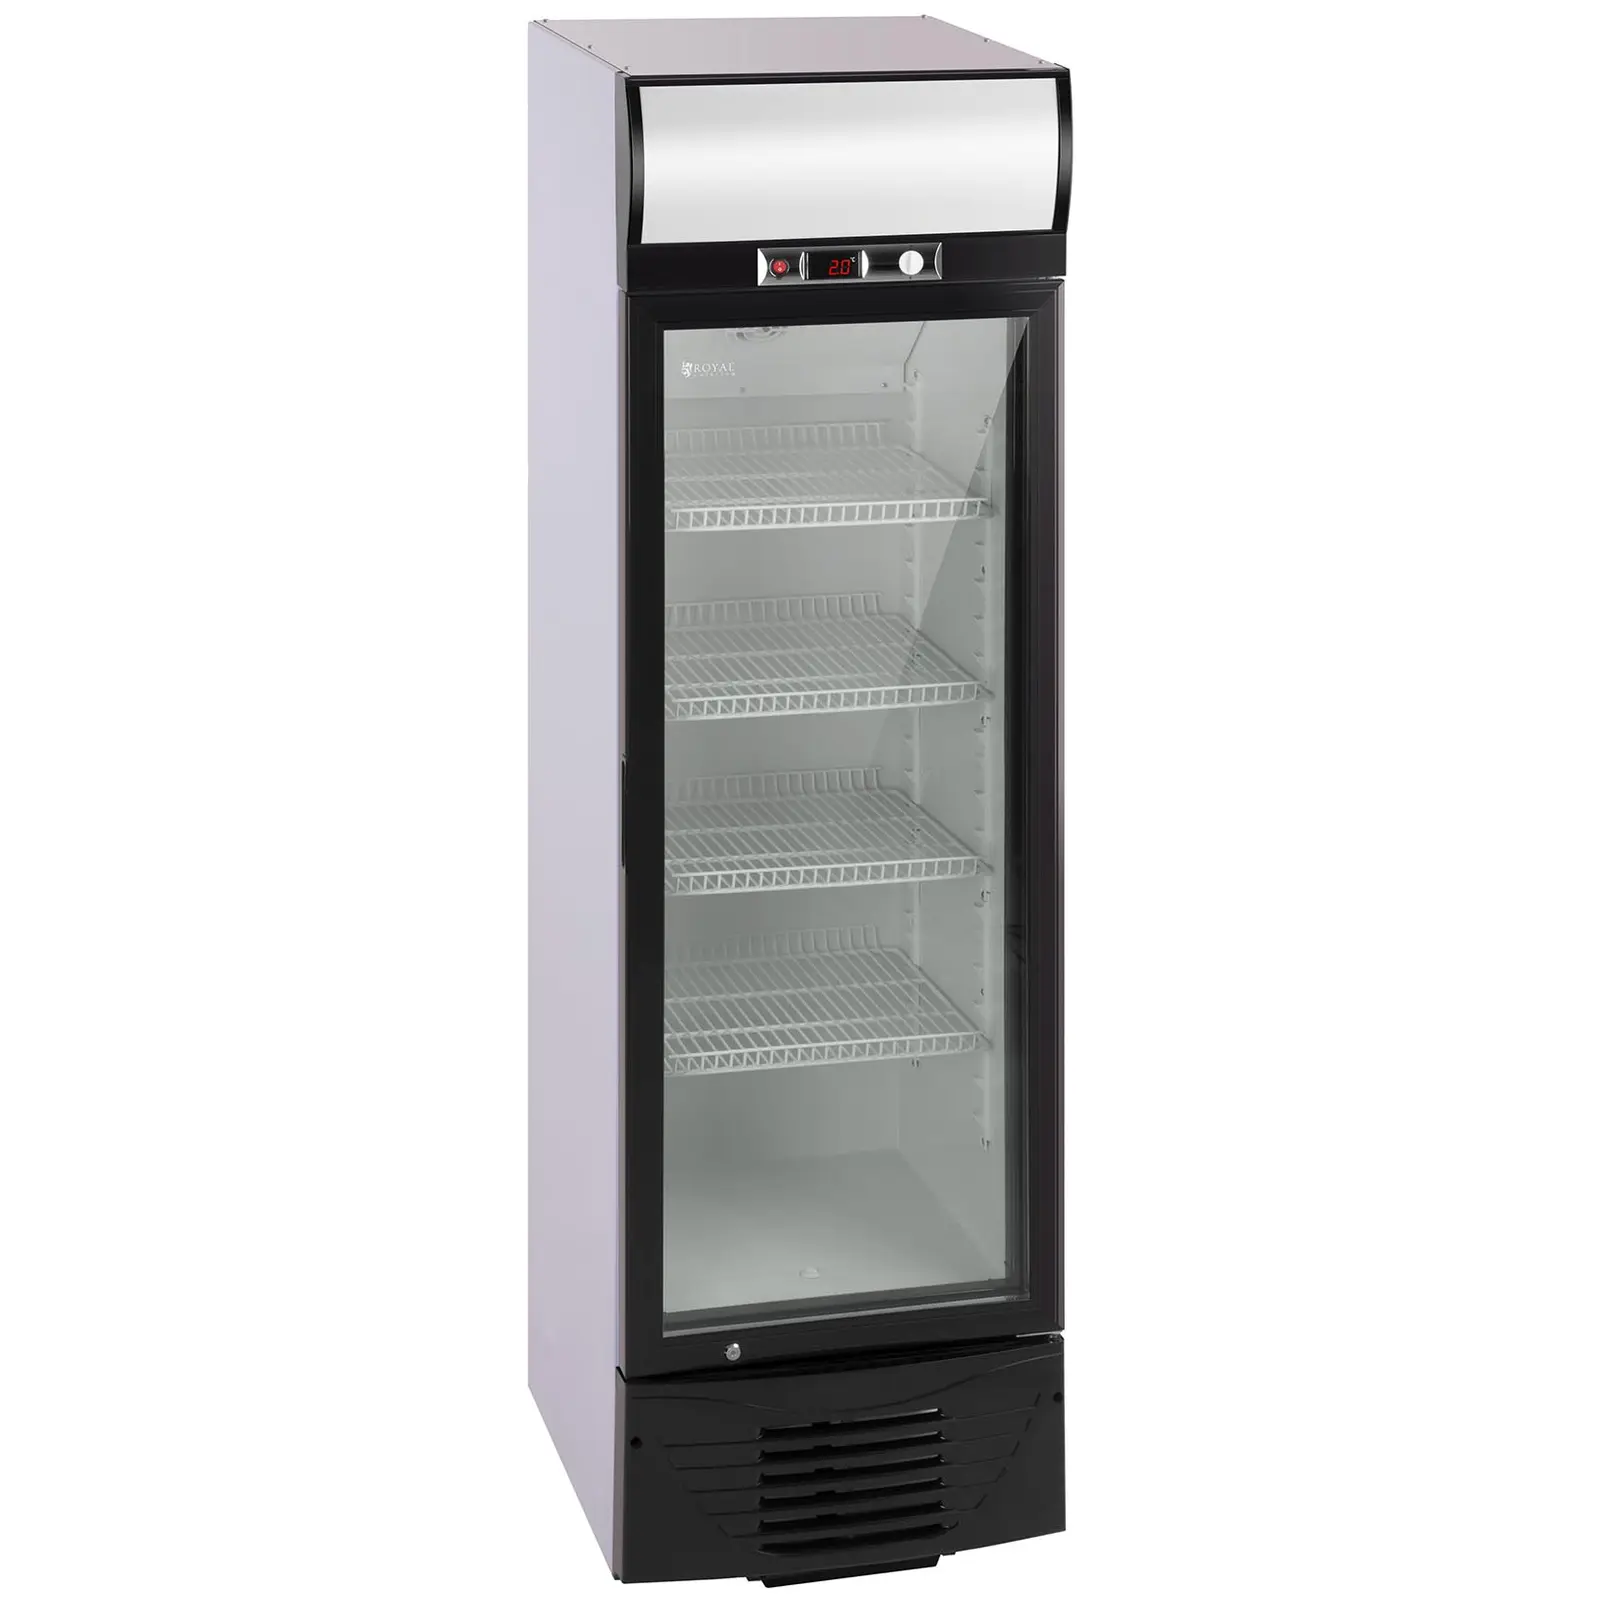 Vetrina frigo per bibite - 278 L - LED